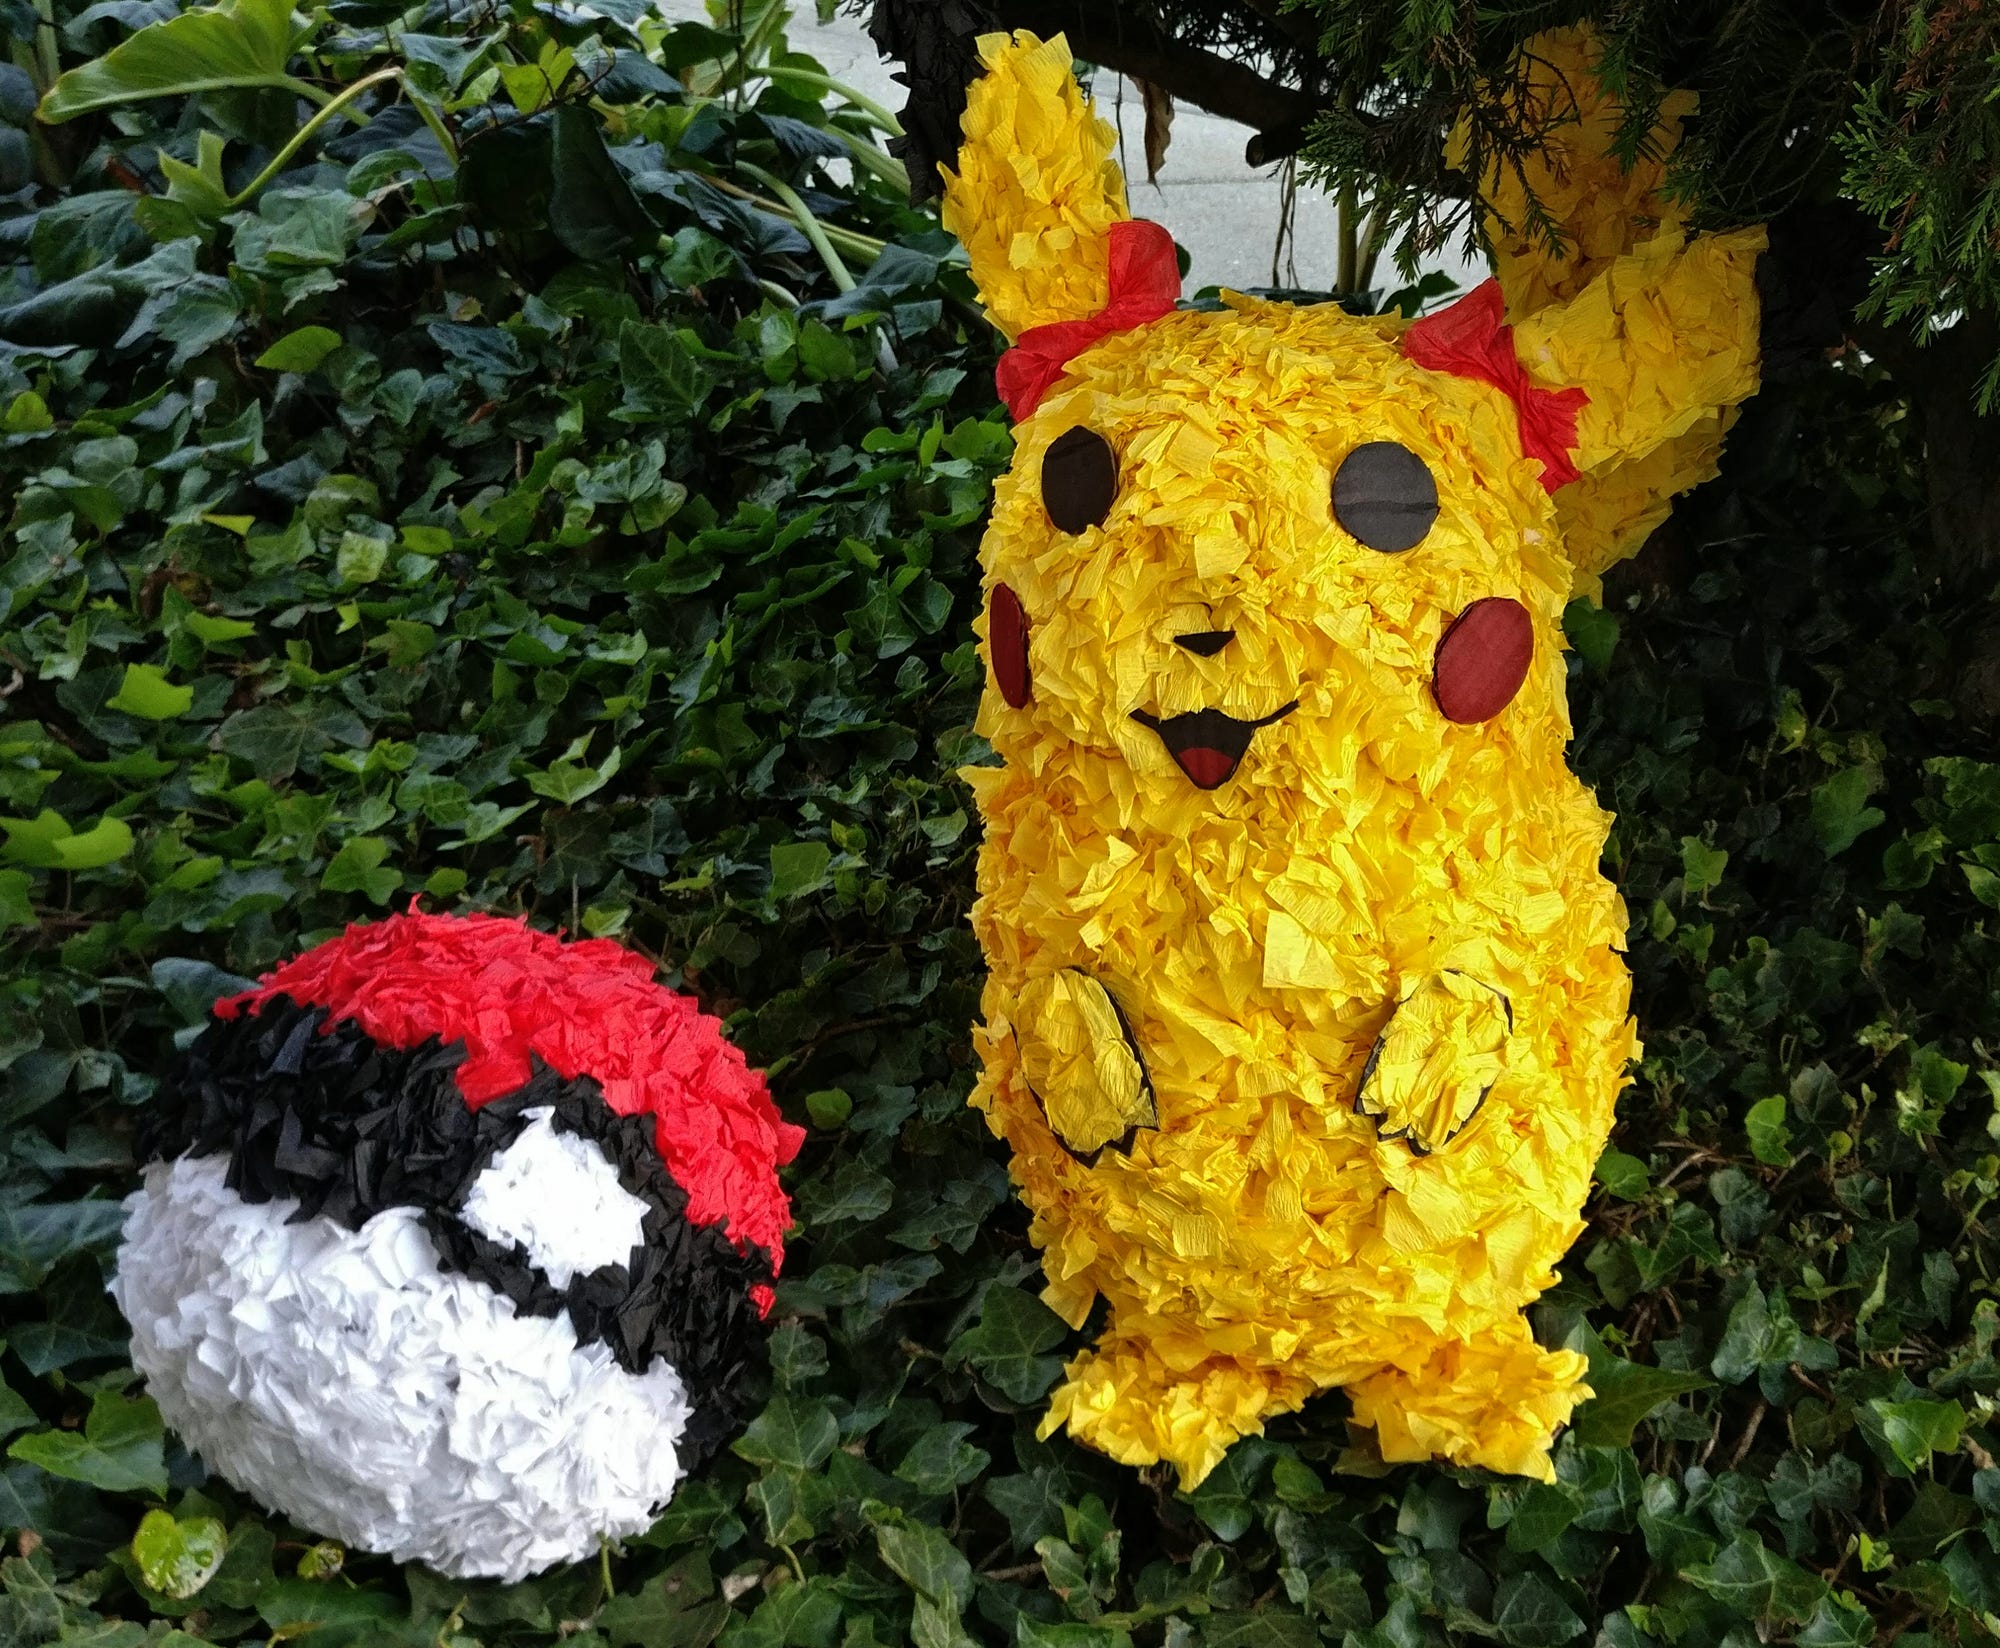 Pokemon Piñata  Project #6. Pikachu and pokeball piñatas made of